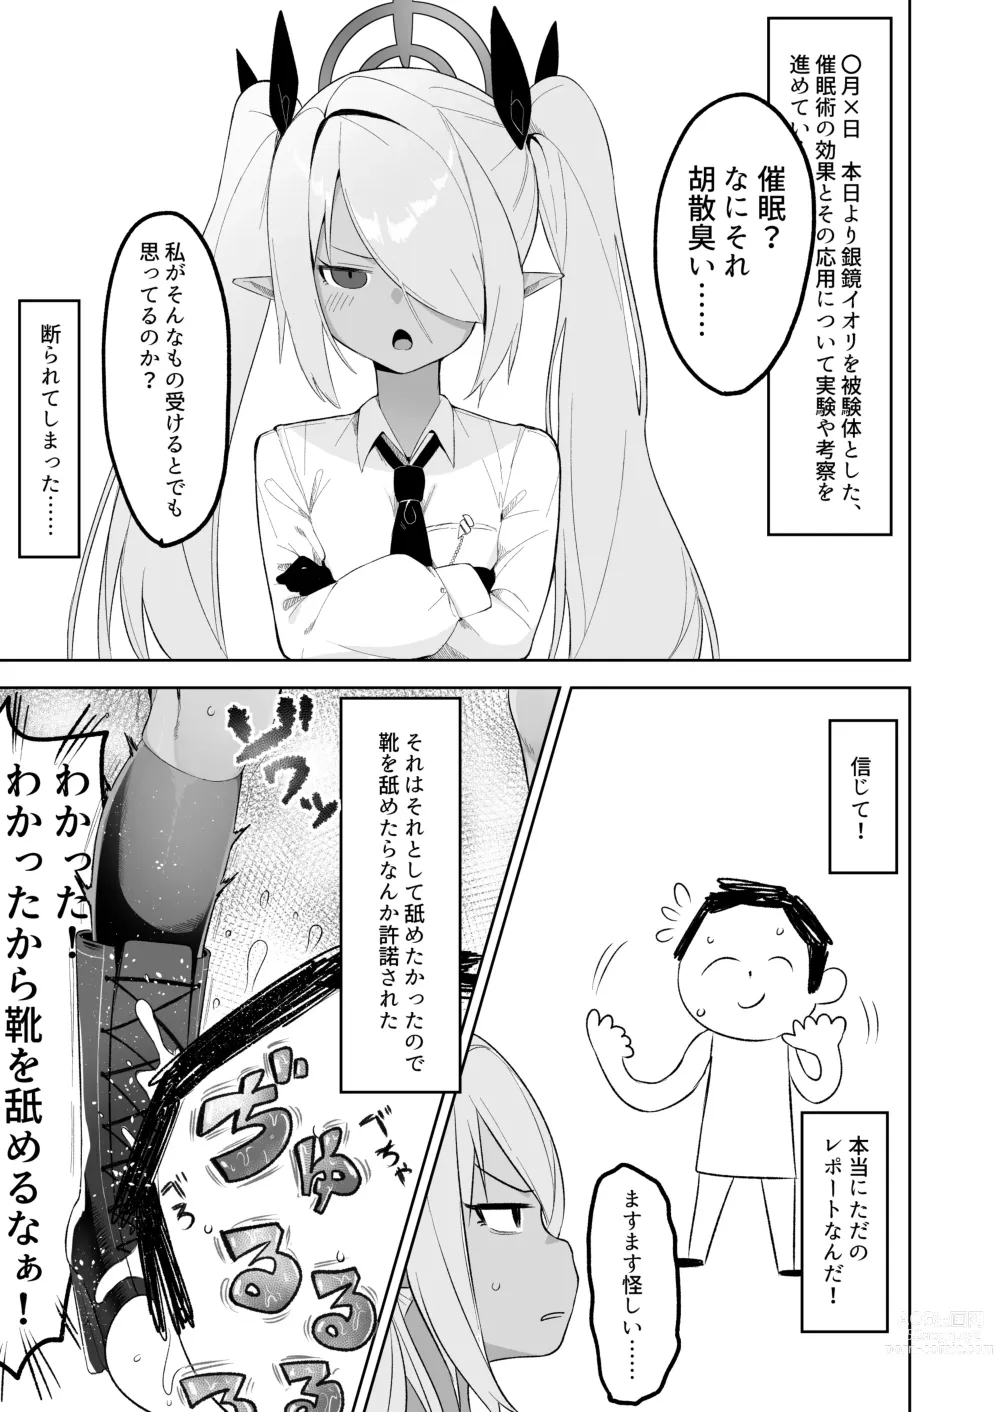 Page 3 of doujinshi Shiromi Iori o Hypno-ru.